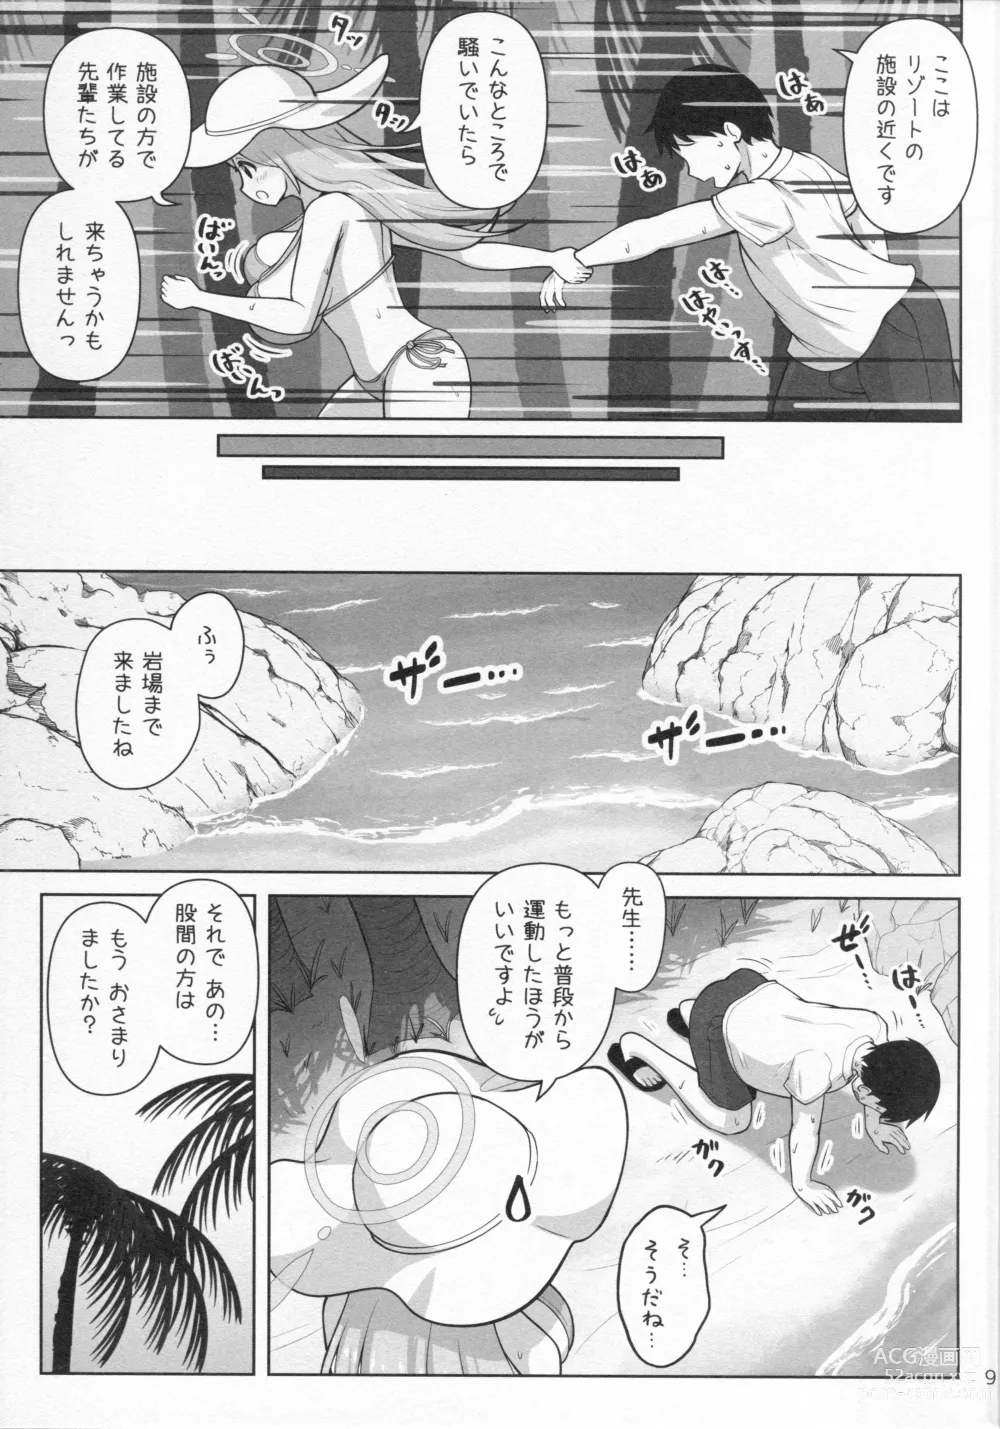 Page 10 of doujinshi Nonomi Massakari